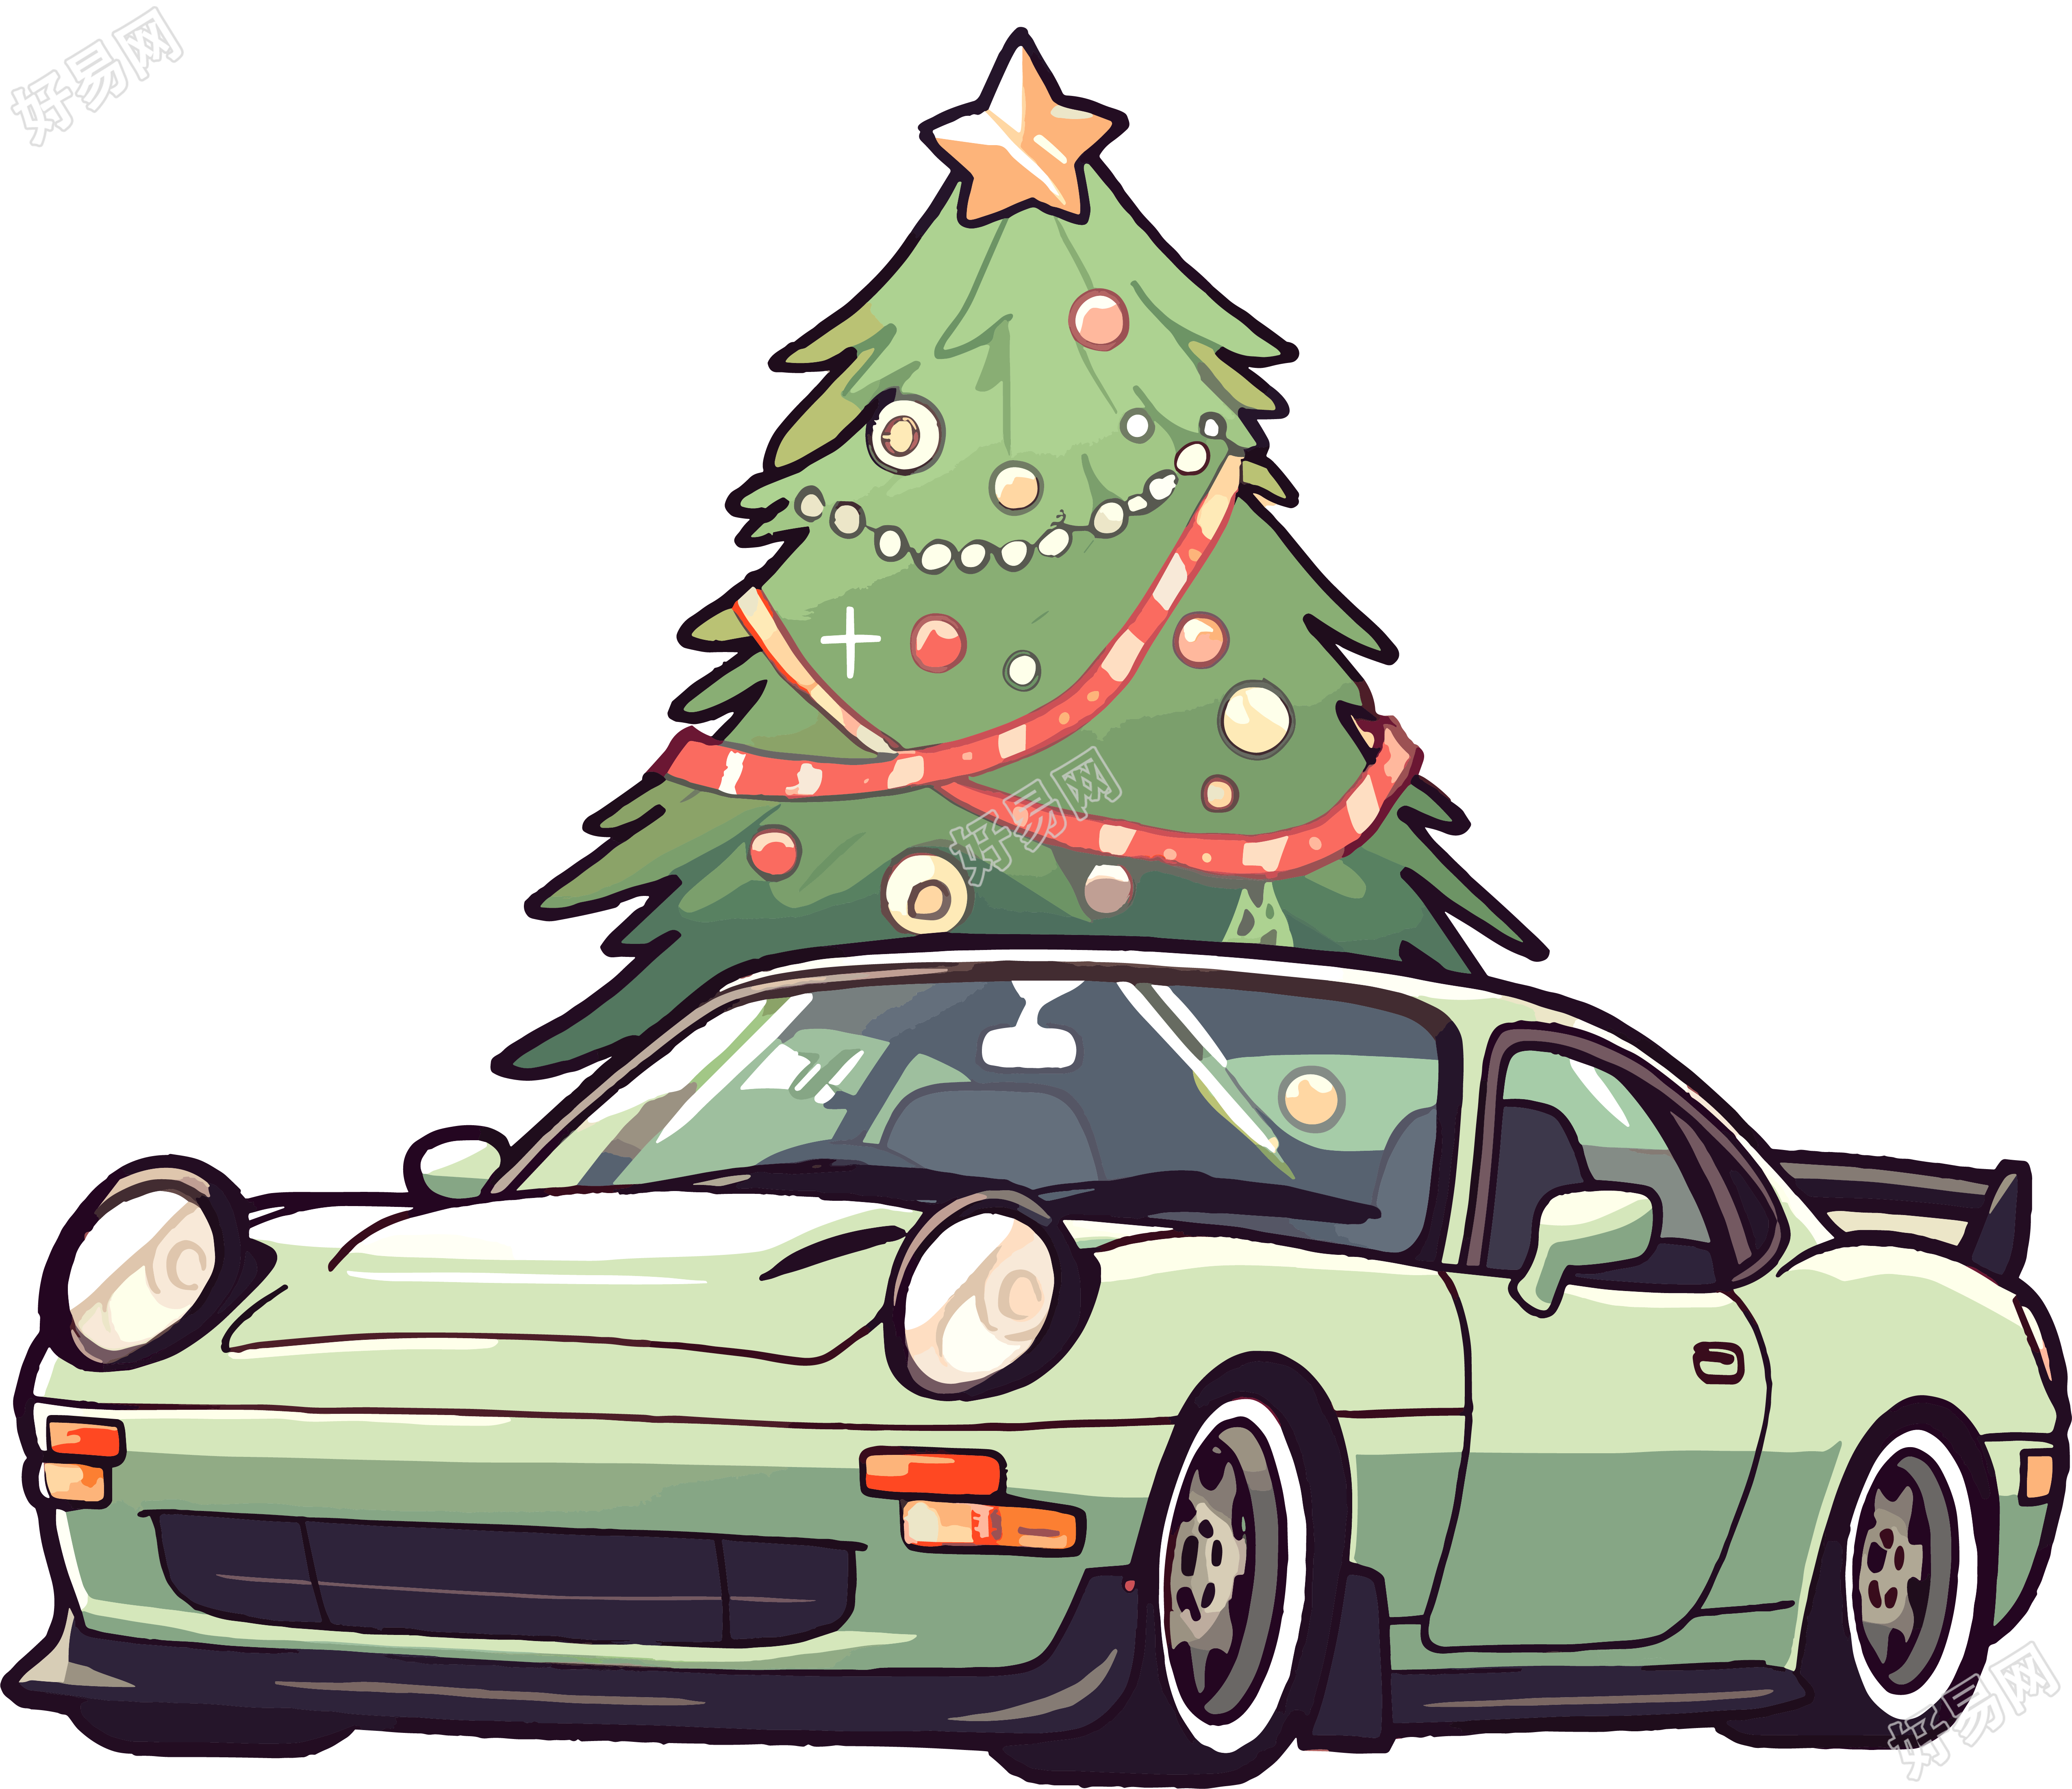 圣诞树和车创意设计素材